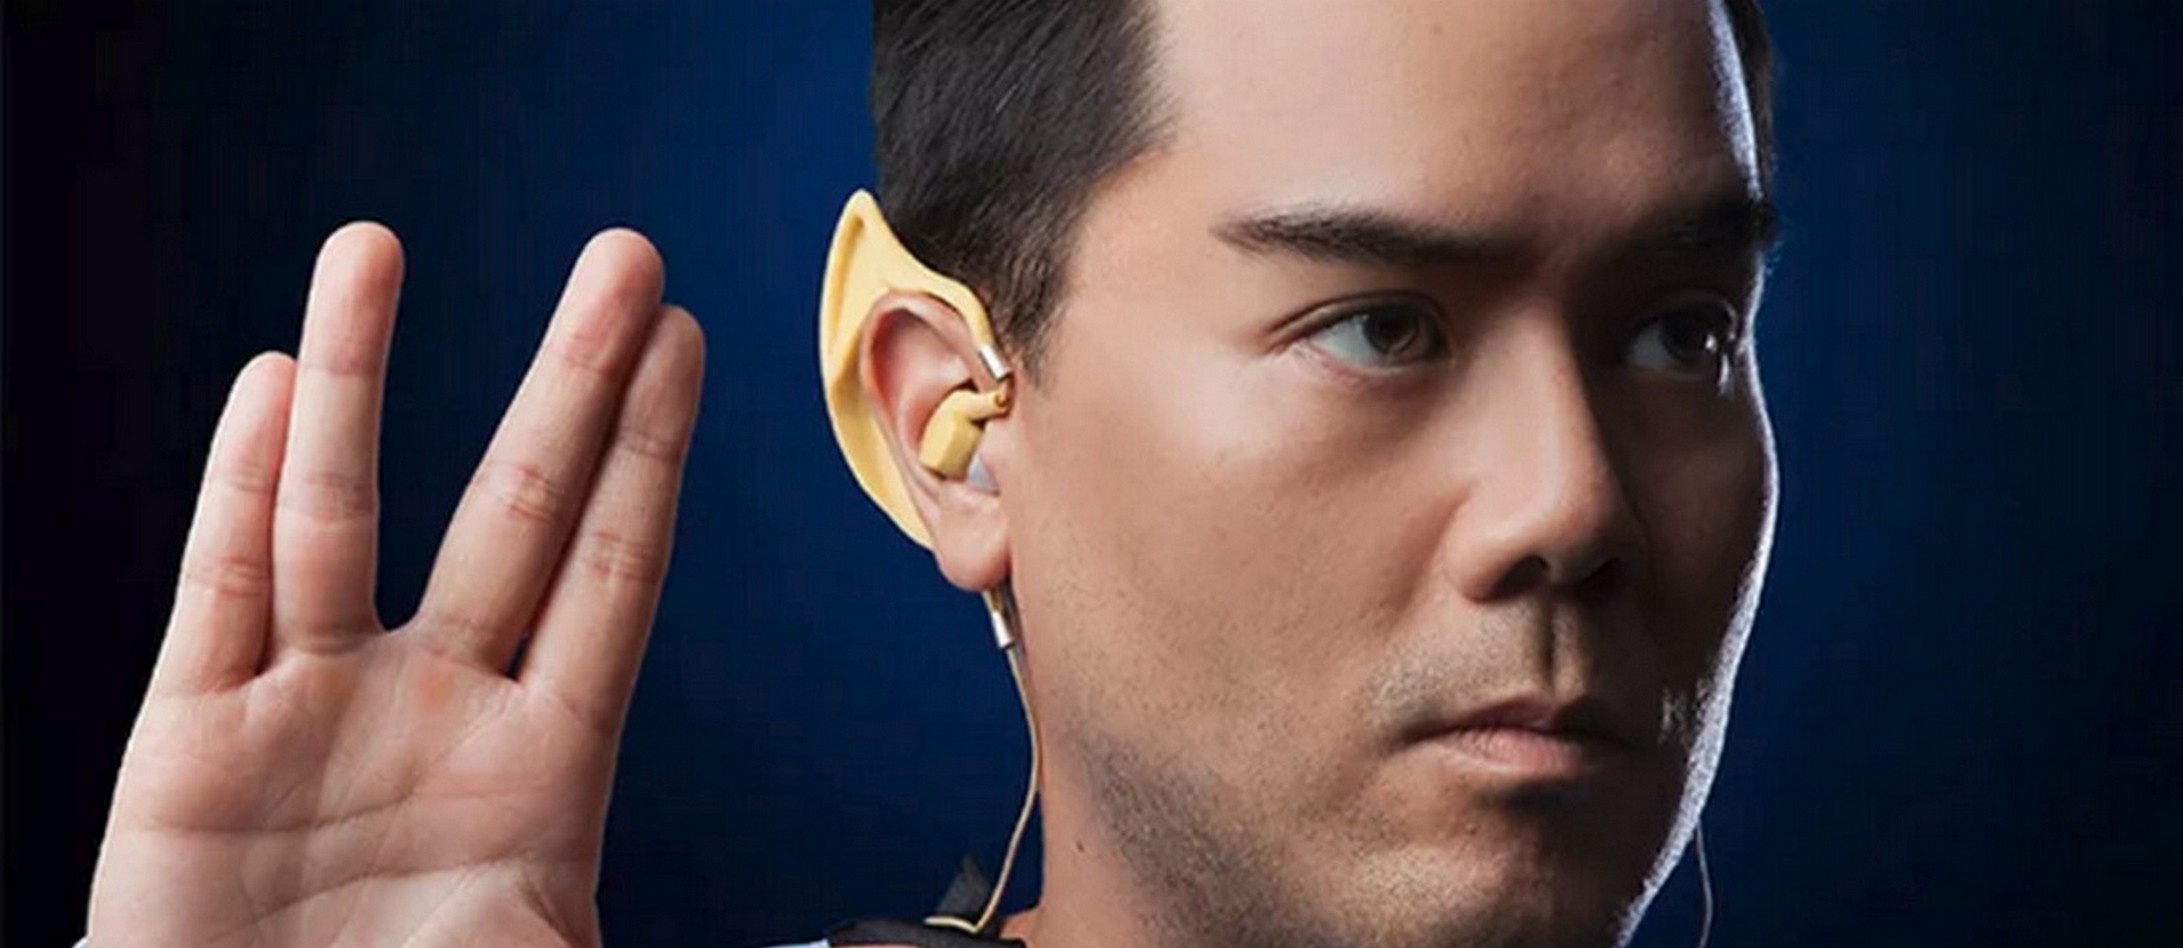 Les oreillettes sans fil Vulcan inspirées des oreilles de monsieur Spock, l’inoubliable membre de la saga Star Trek. © ThinkGeek